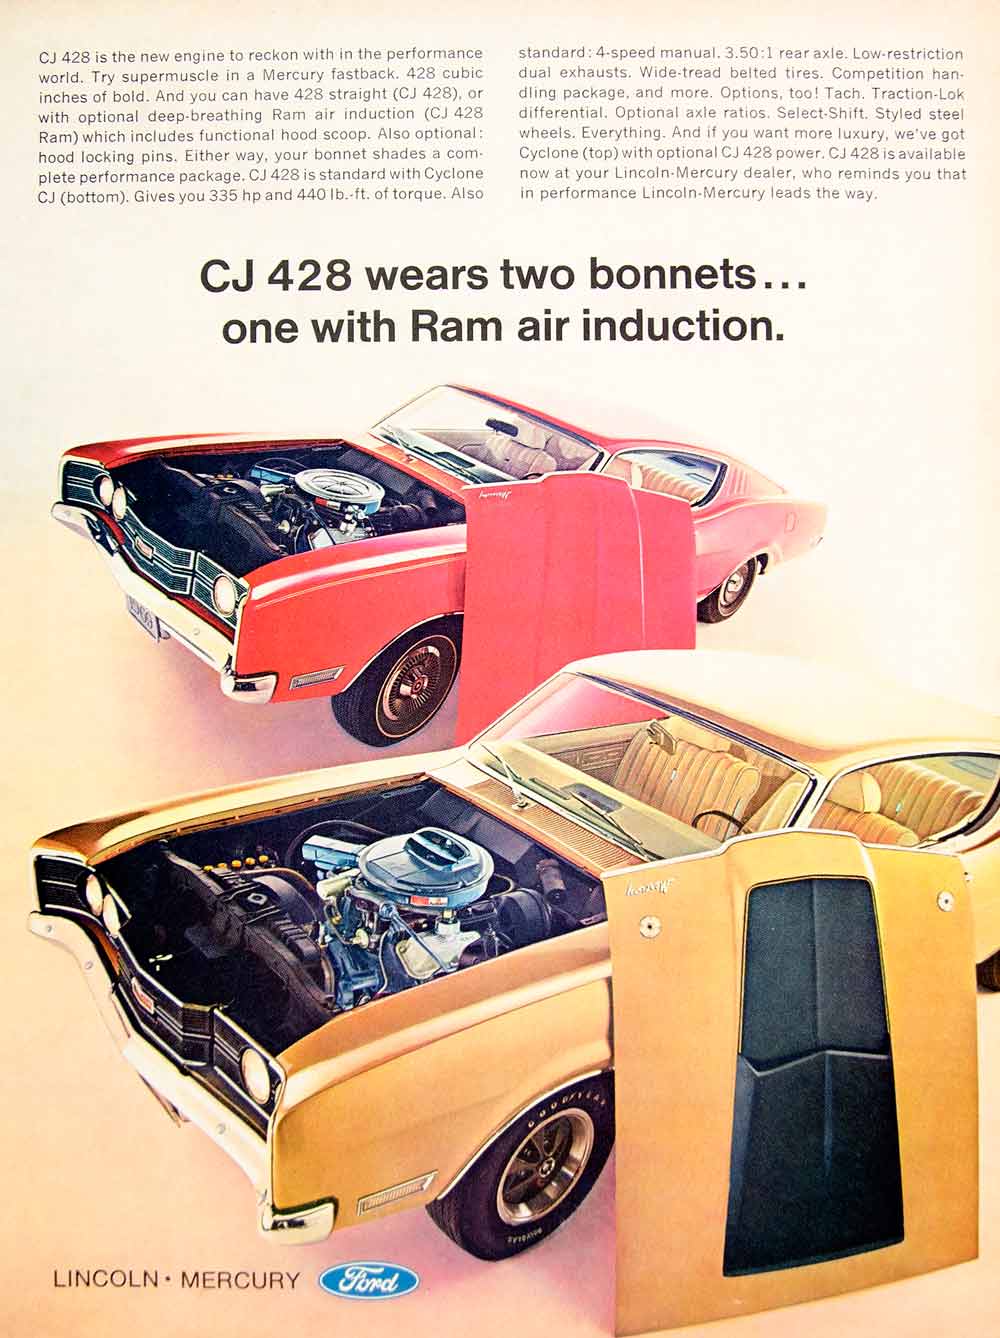 1969 Ad Mercury Cyclone CJ 428 Muscle Car Fastback Classic Automobile Ford YHR3